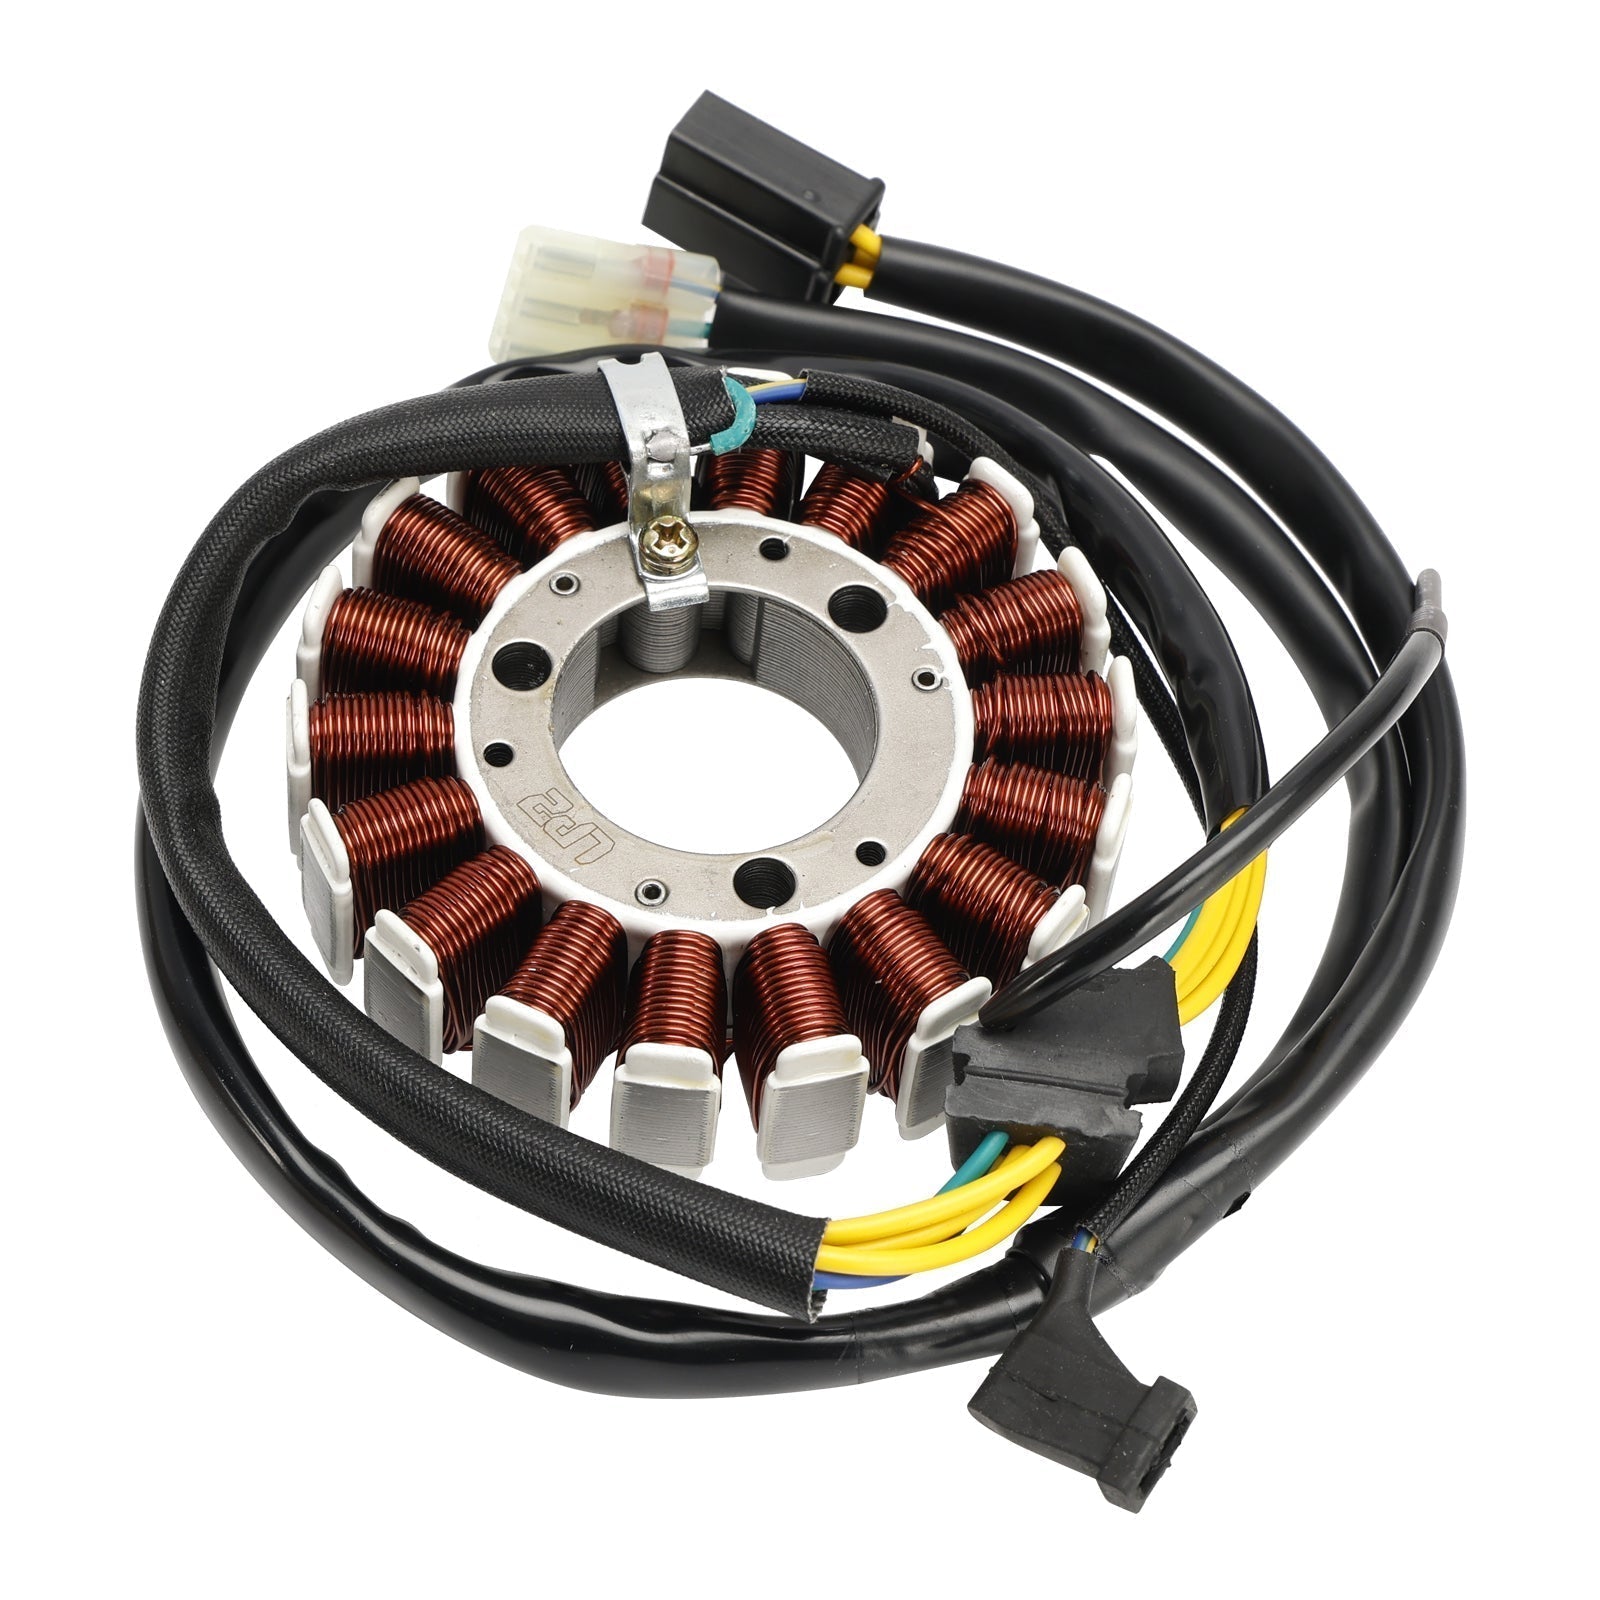 Stator de bobine magnétique Honda CRF230L 2008-2009 + régulateur de tension + joint Assy 31120-KFB-841